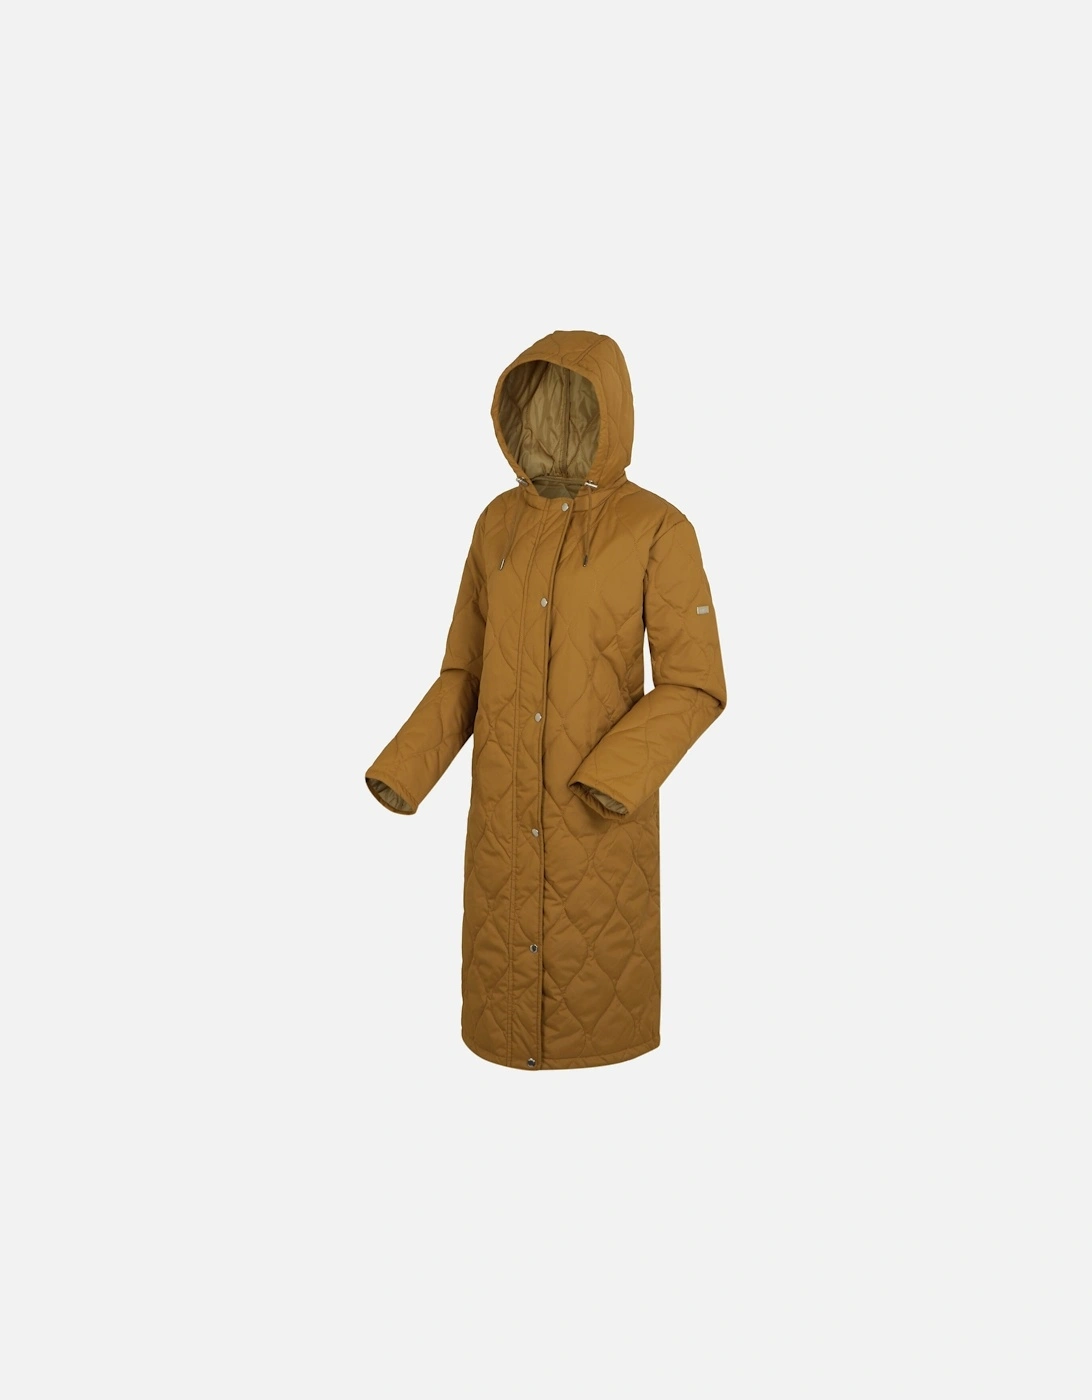 Womens/Ladies Jaycee Quilted Hooded Jacket